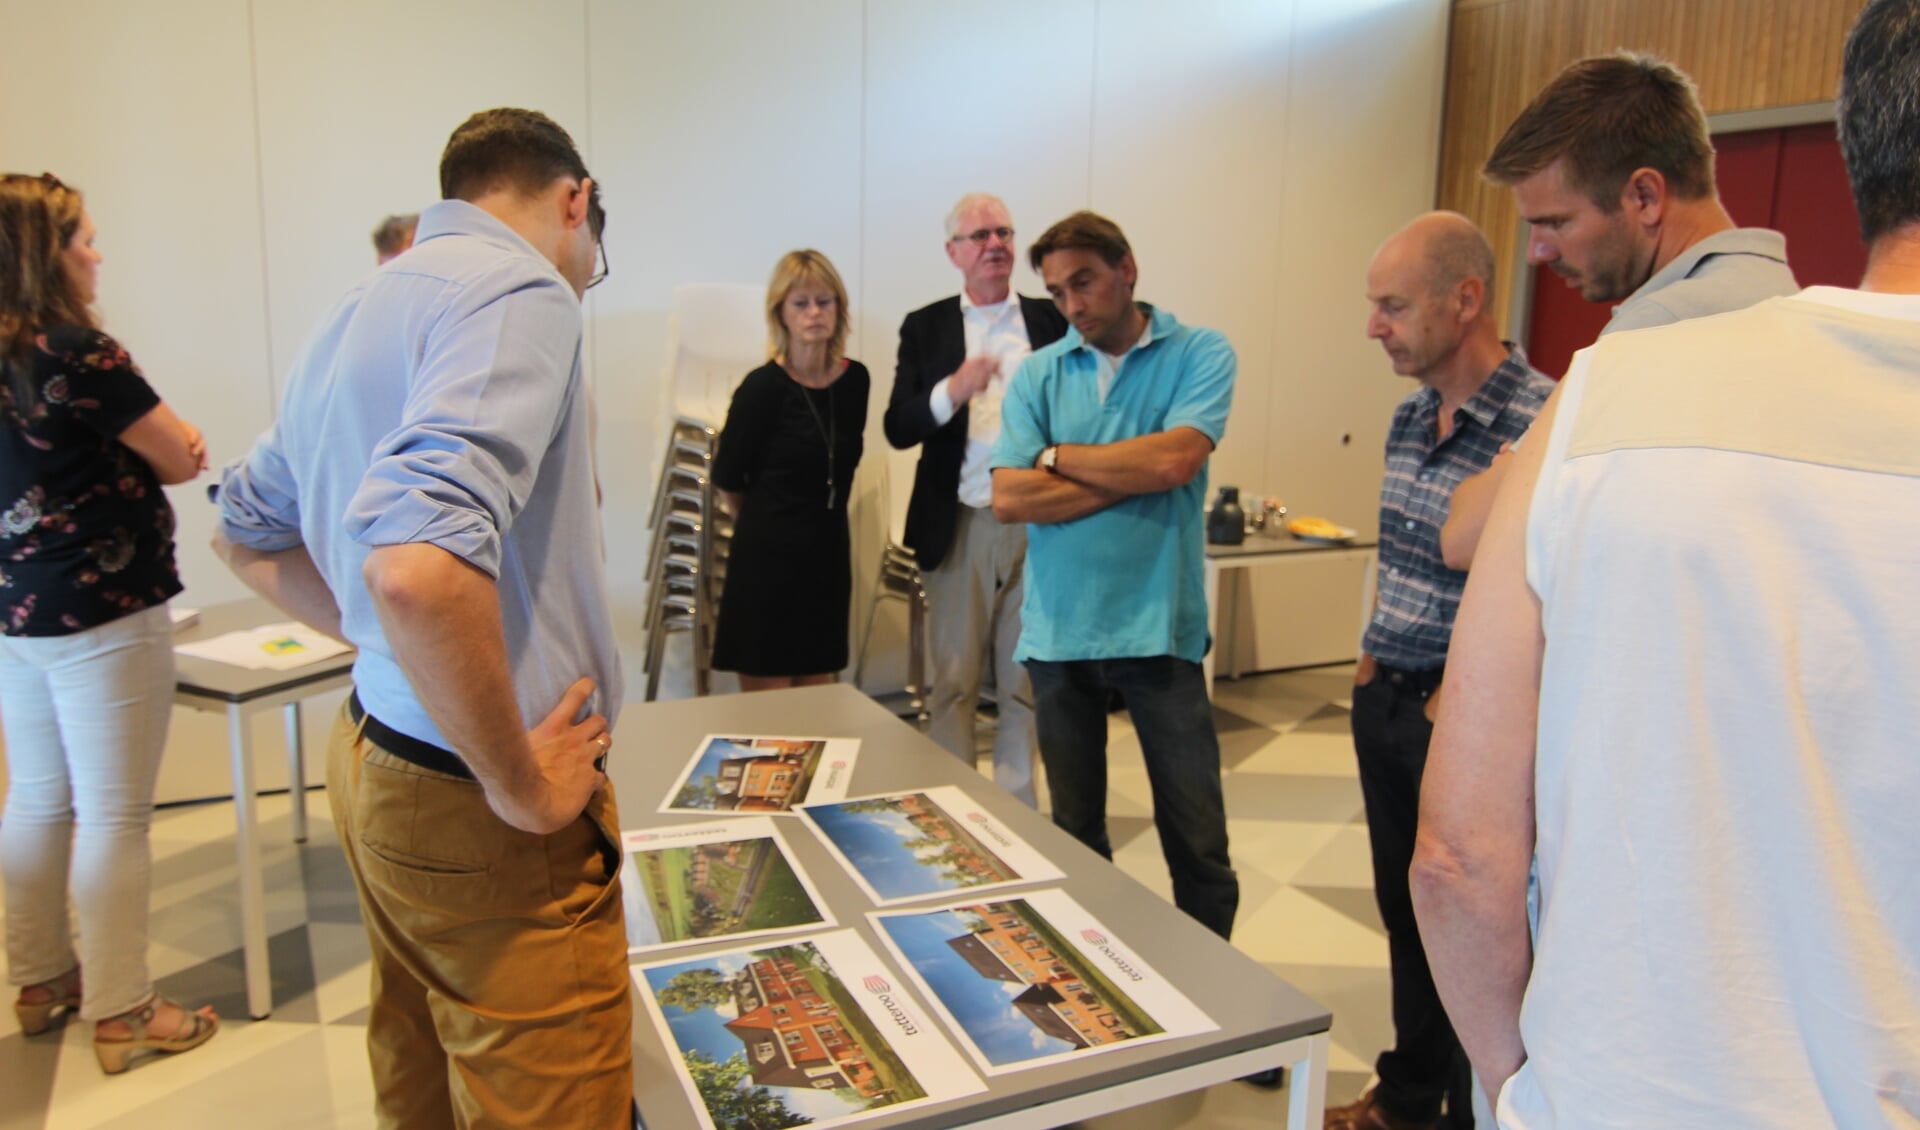 Dinsdag 3 juli was er in het Dorpshuis in Hollandsche Rading aan de Dennenlaan 57 een inloopavond, waarbij medewerkers van de gemeente aanwezig waren voor informatie over de ontwerpbesluiten voor dit project. 